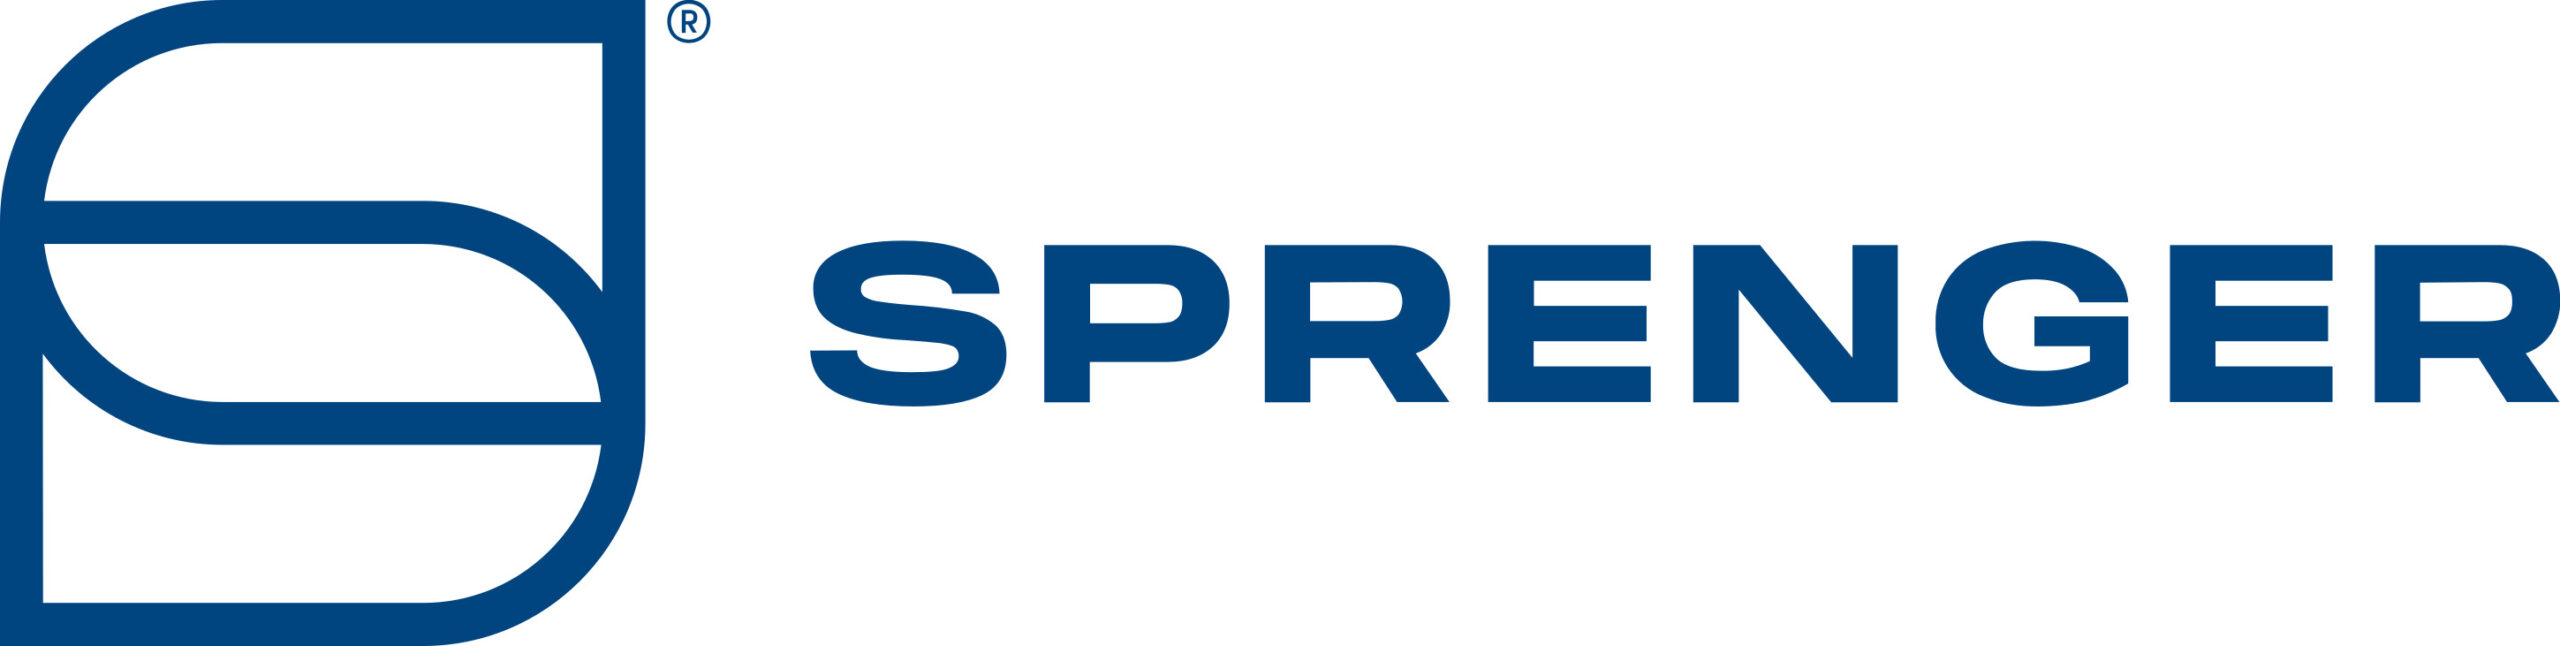 Sprenger_logo